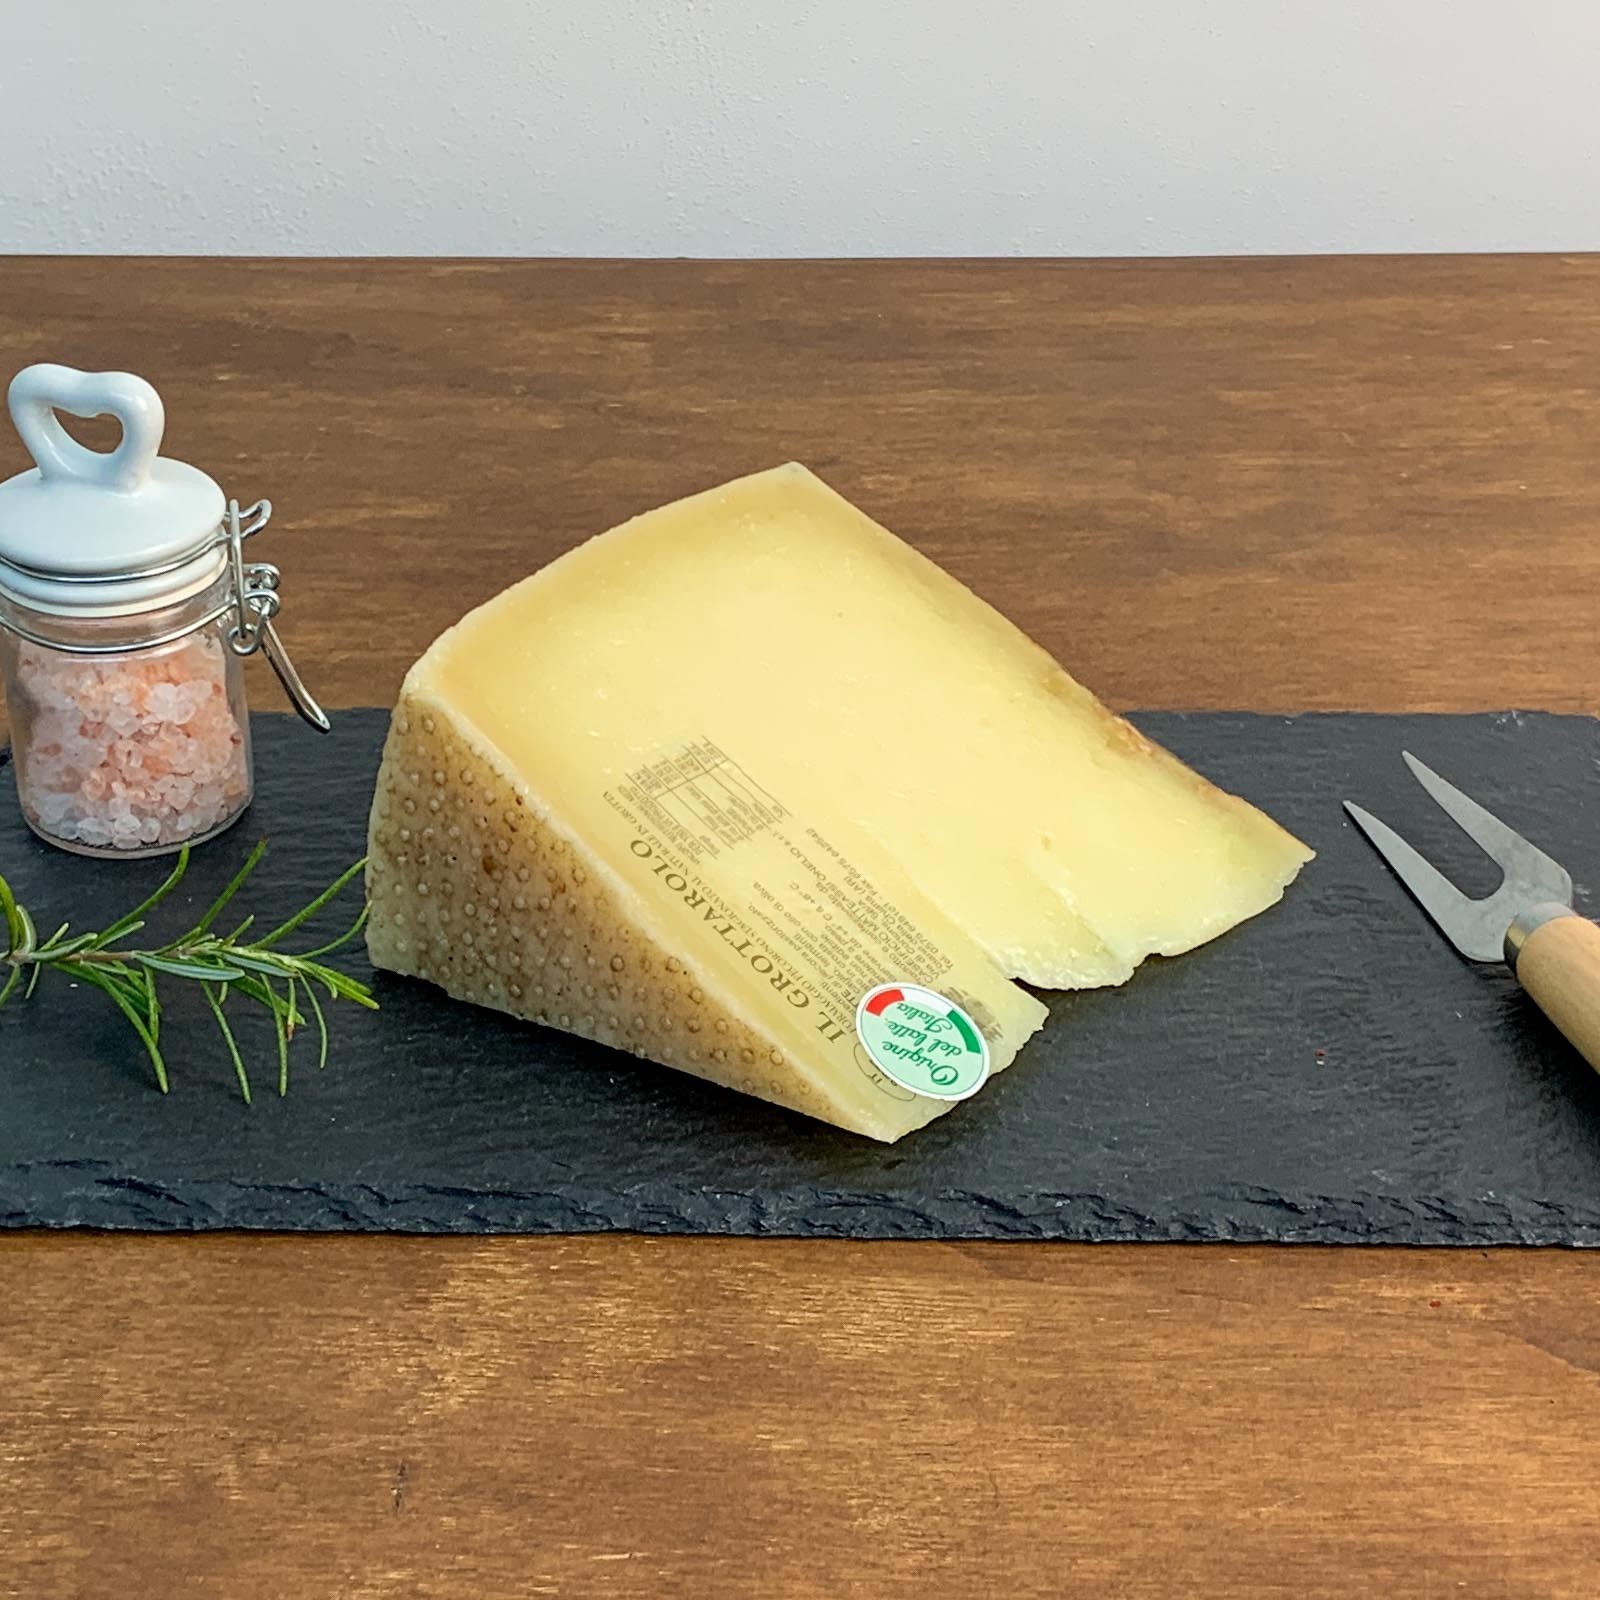 Der gereifte toskanische „Il Grottarolo” Pecorino-Käse verdankt seinen Namen dem Ort der Reifung, an dem der Käse sein charakteristisches Aroma und seinen charakteristischen Geschmack annimmt, der ihn zu einem festen Bestandteil der großen Familie der toskanischen Pecorino-Käse macht, die in Italien und im Ausland so beliebt sind. Sein Produktionsgebiet ist genau das Valdichiana und seine wichtigste Besonderheit, um ein hervorragendes Endergebnis zu erzielen, neben der hohen Qualität des Rohstoffs natürlich, ist die Reifung in Höhlen.